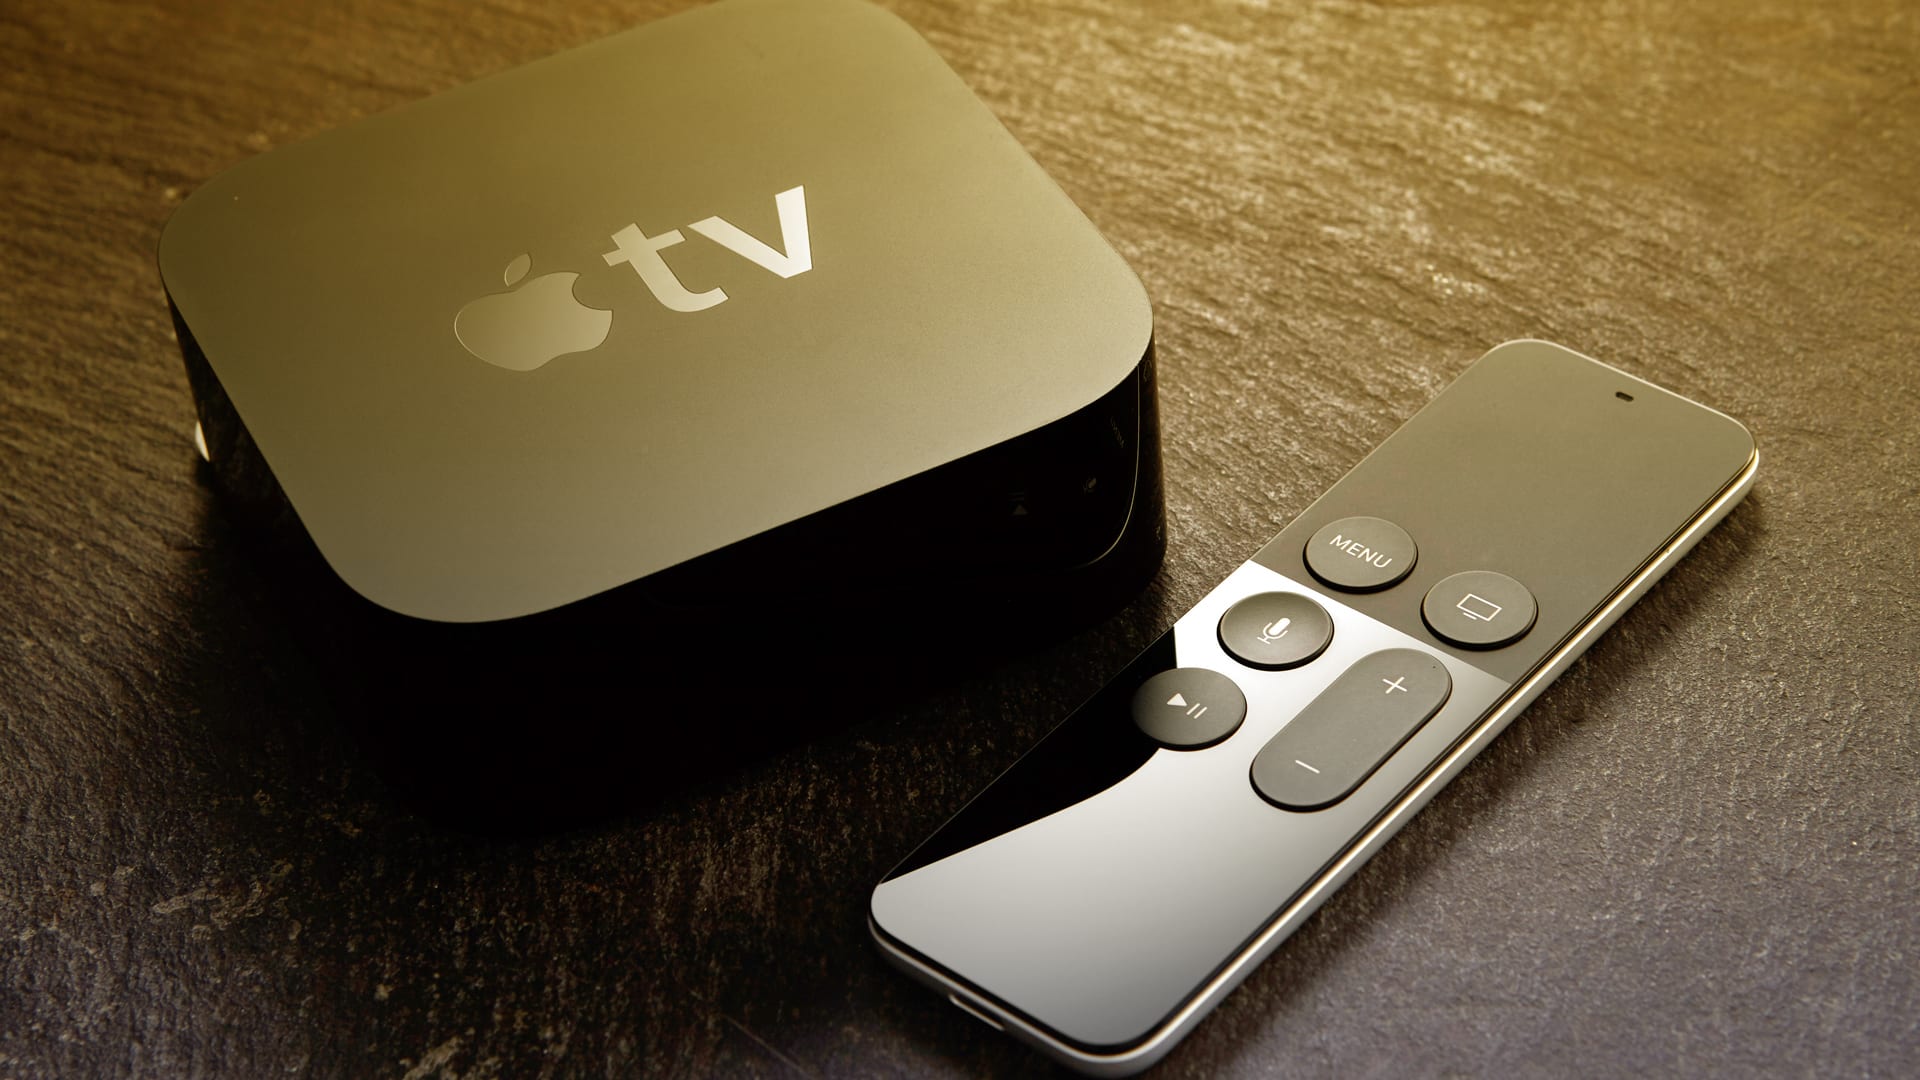 Apple TV and Chromecast suddenly appear on Amazon’s website